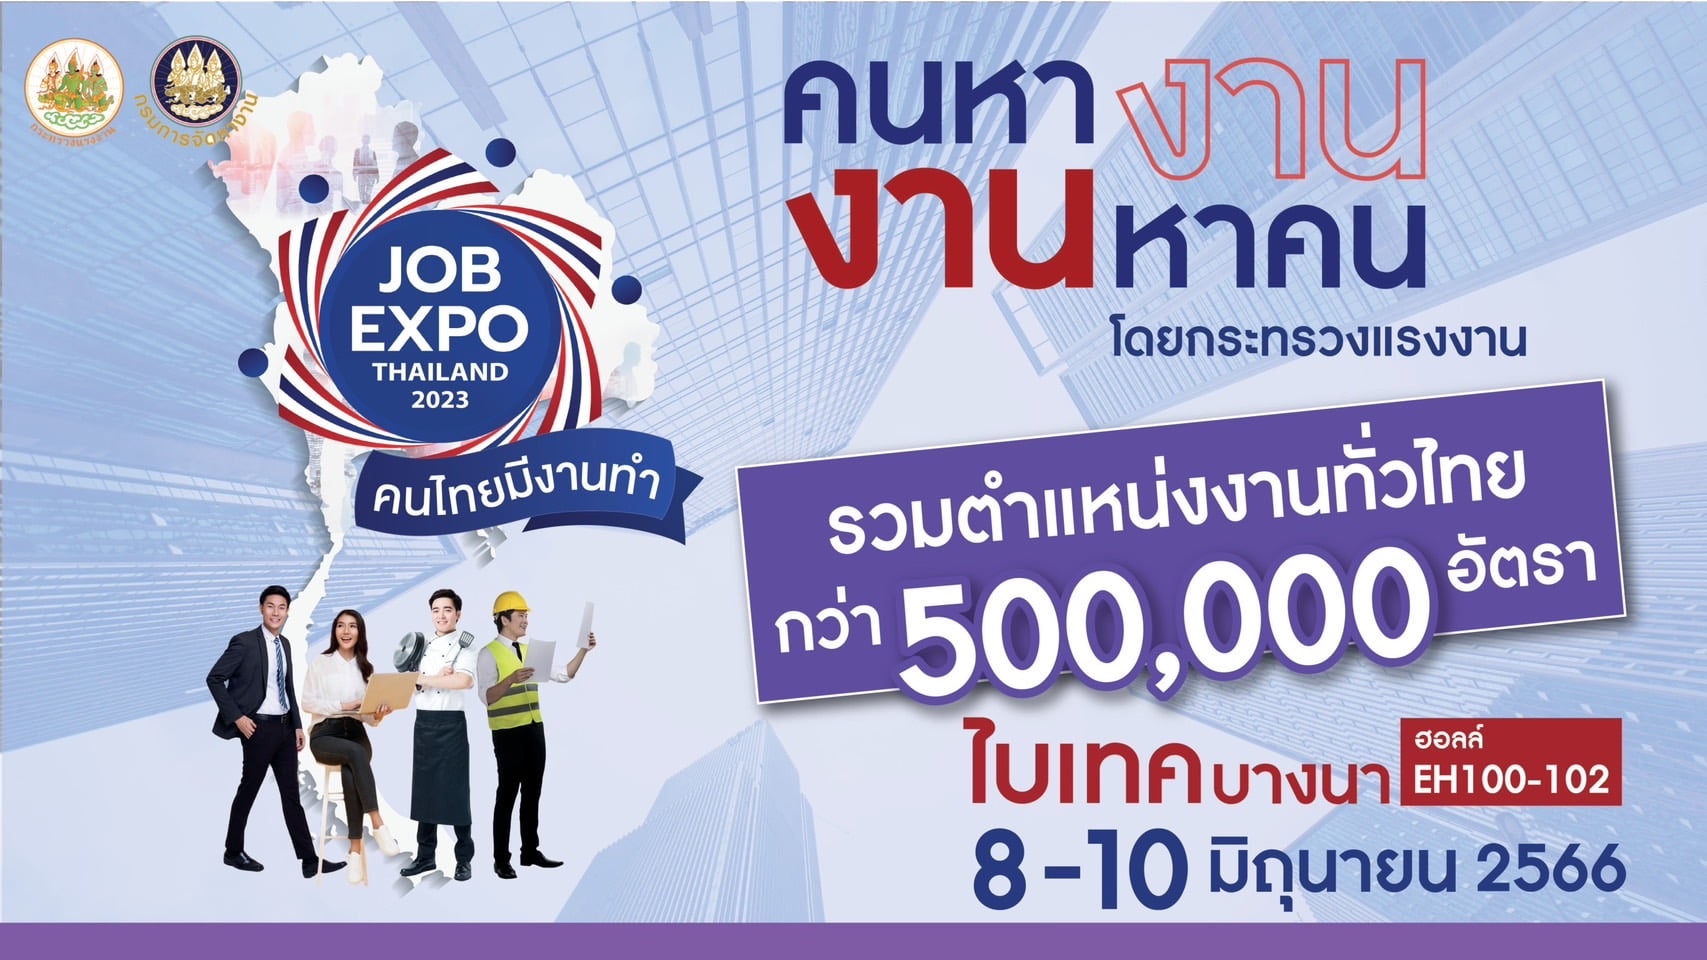 “เพื่อคนไทยมีงานทำ คนหางาน งานหาคน”